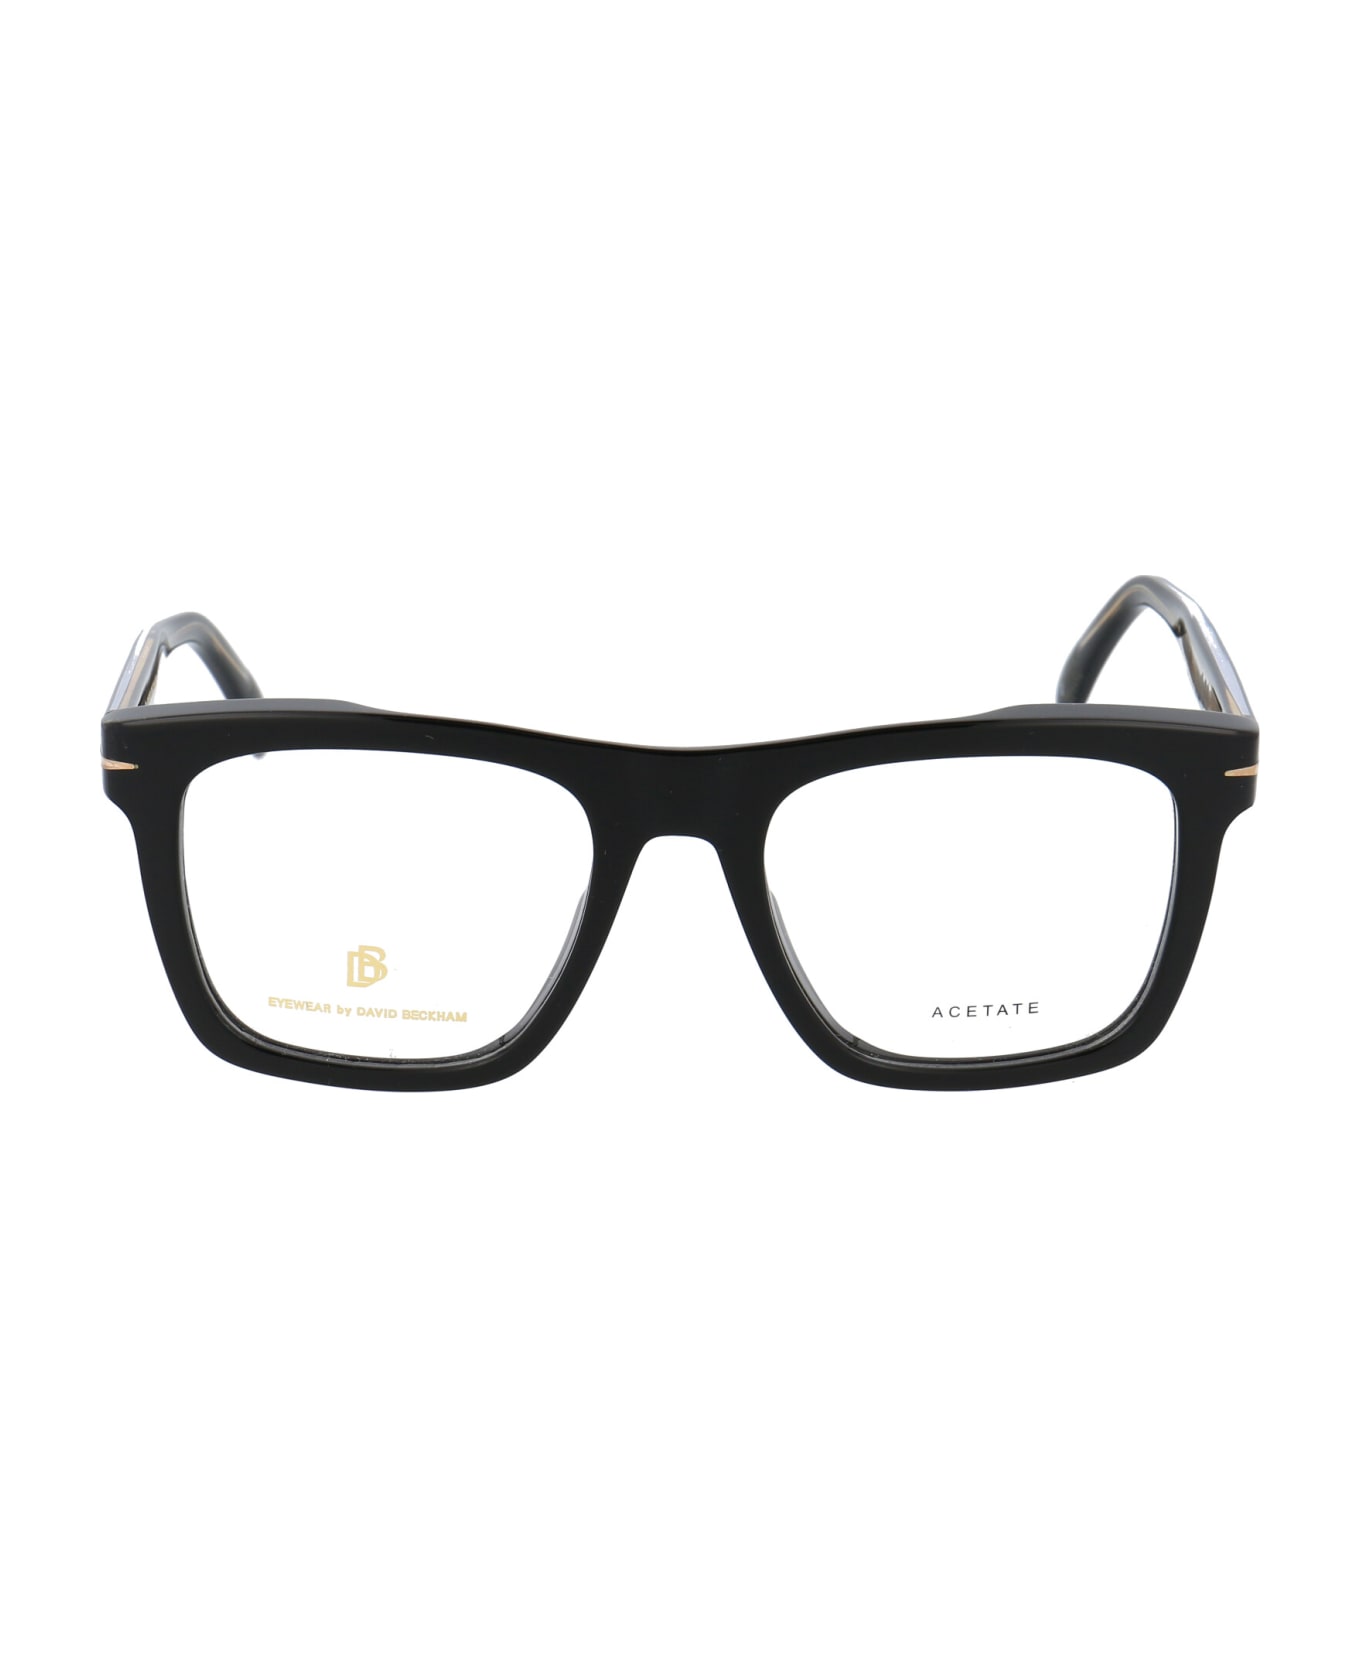 DB Eyewear by David Beckham Db 7020 Glasses - 807 BLACK アイウェア